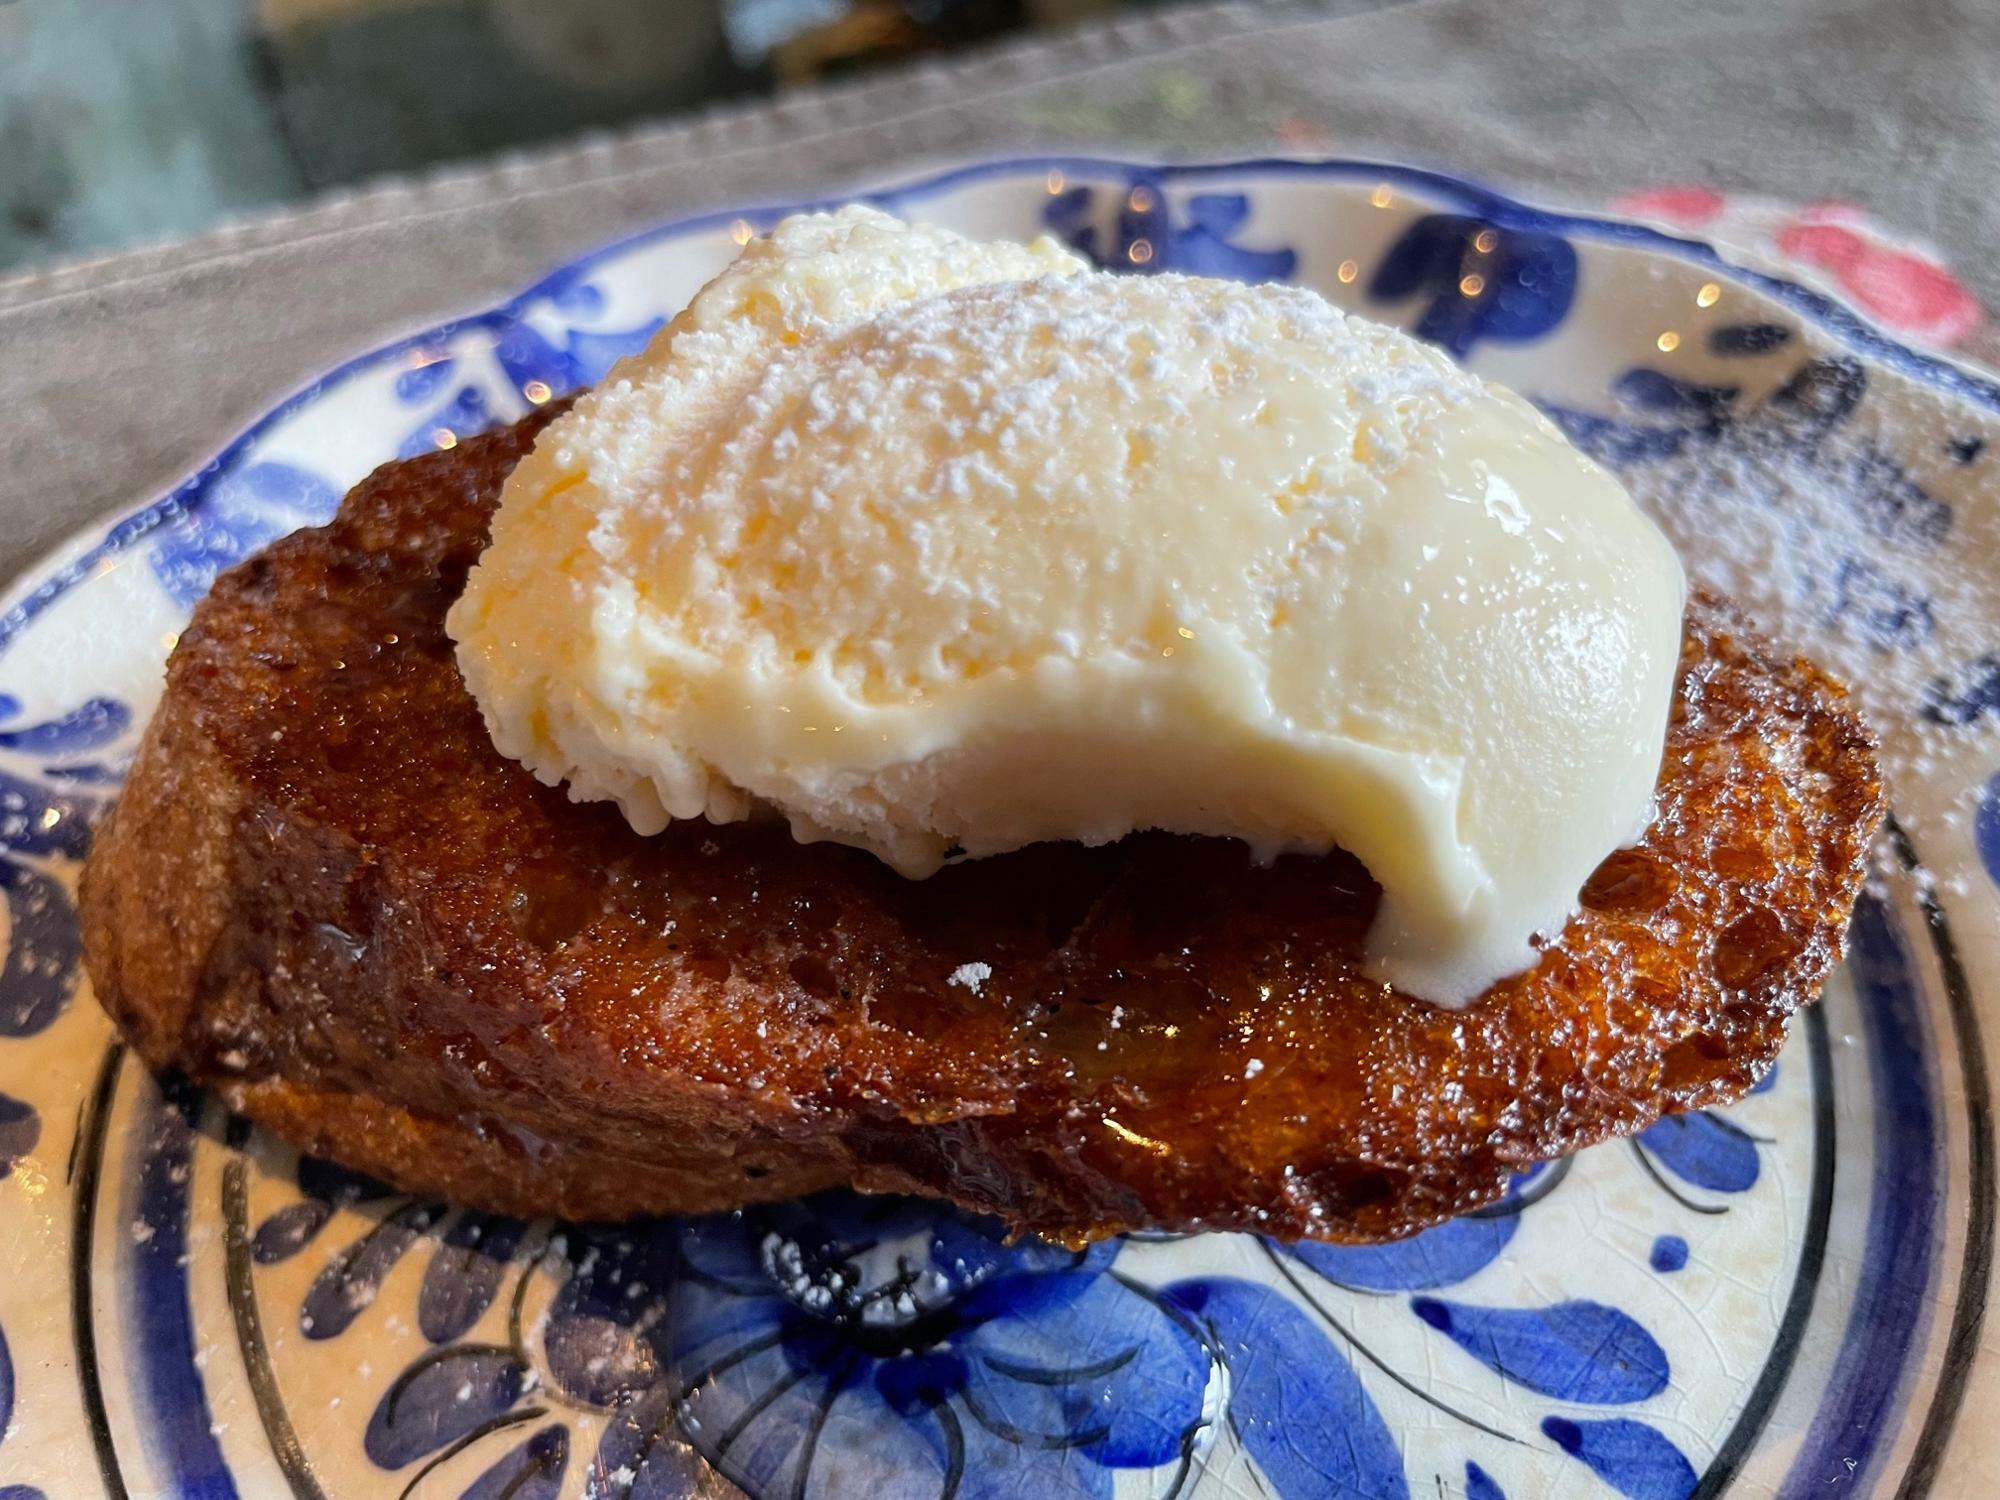 スペインのデザート「トリファ」。はちみつとシナモンをかけて焼いたフランスパンの上にアイスがのった絶品デザート。